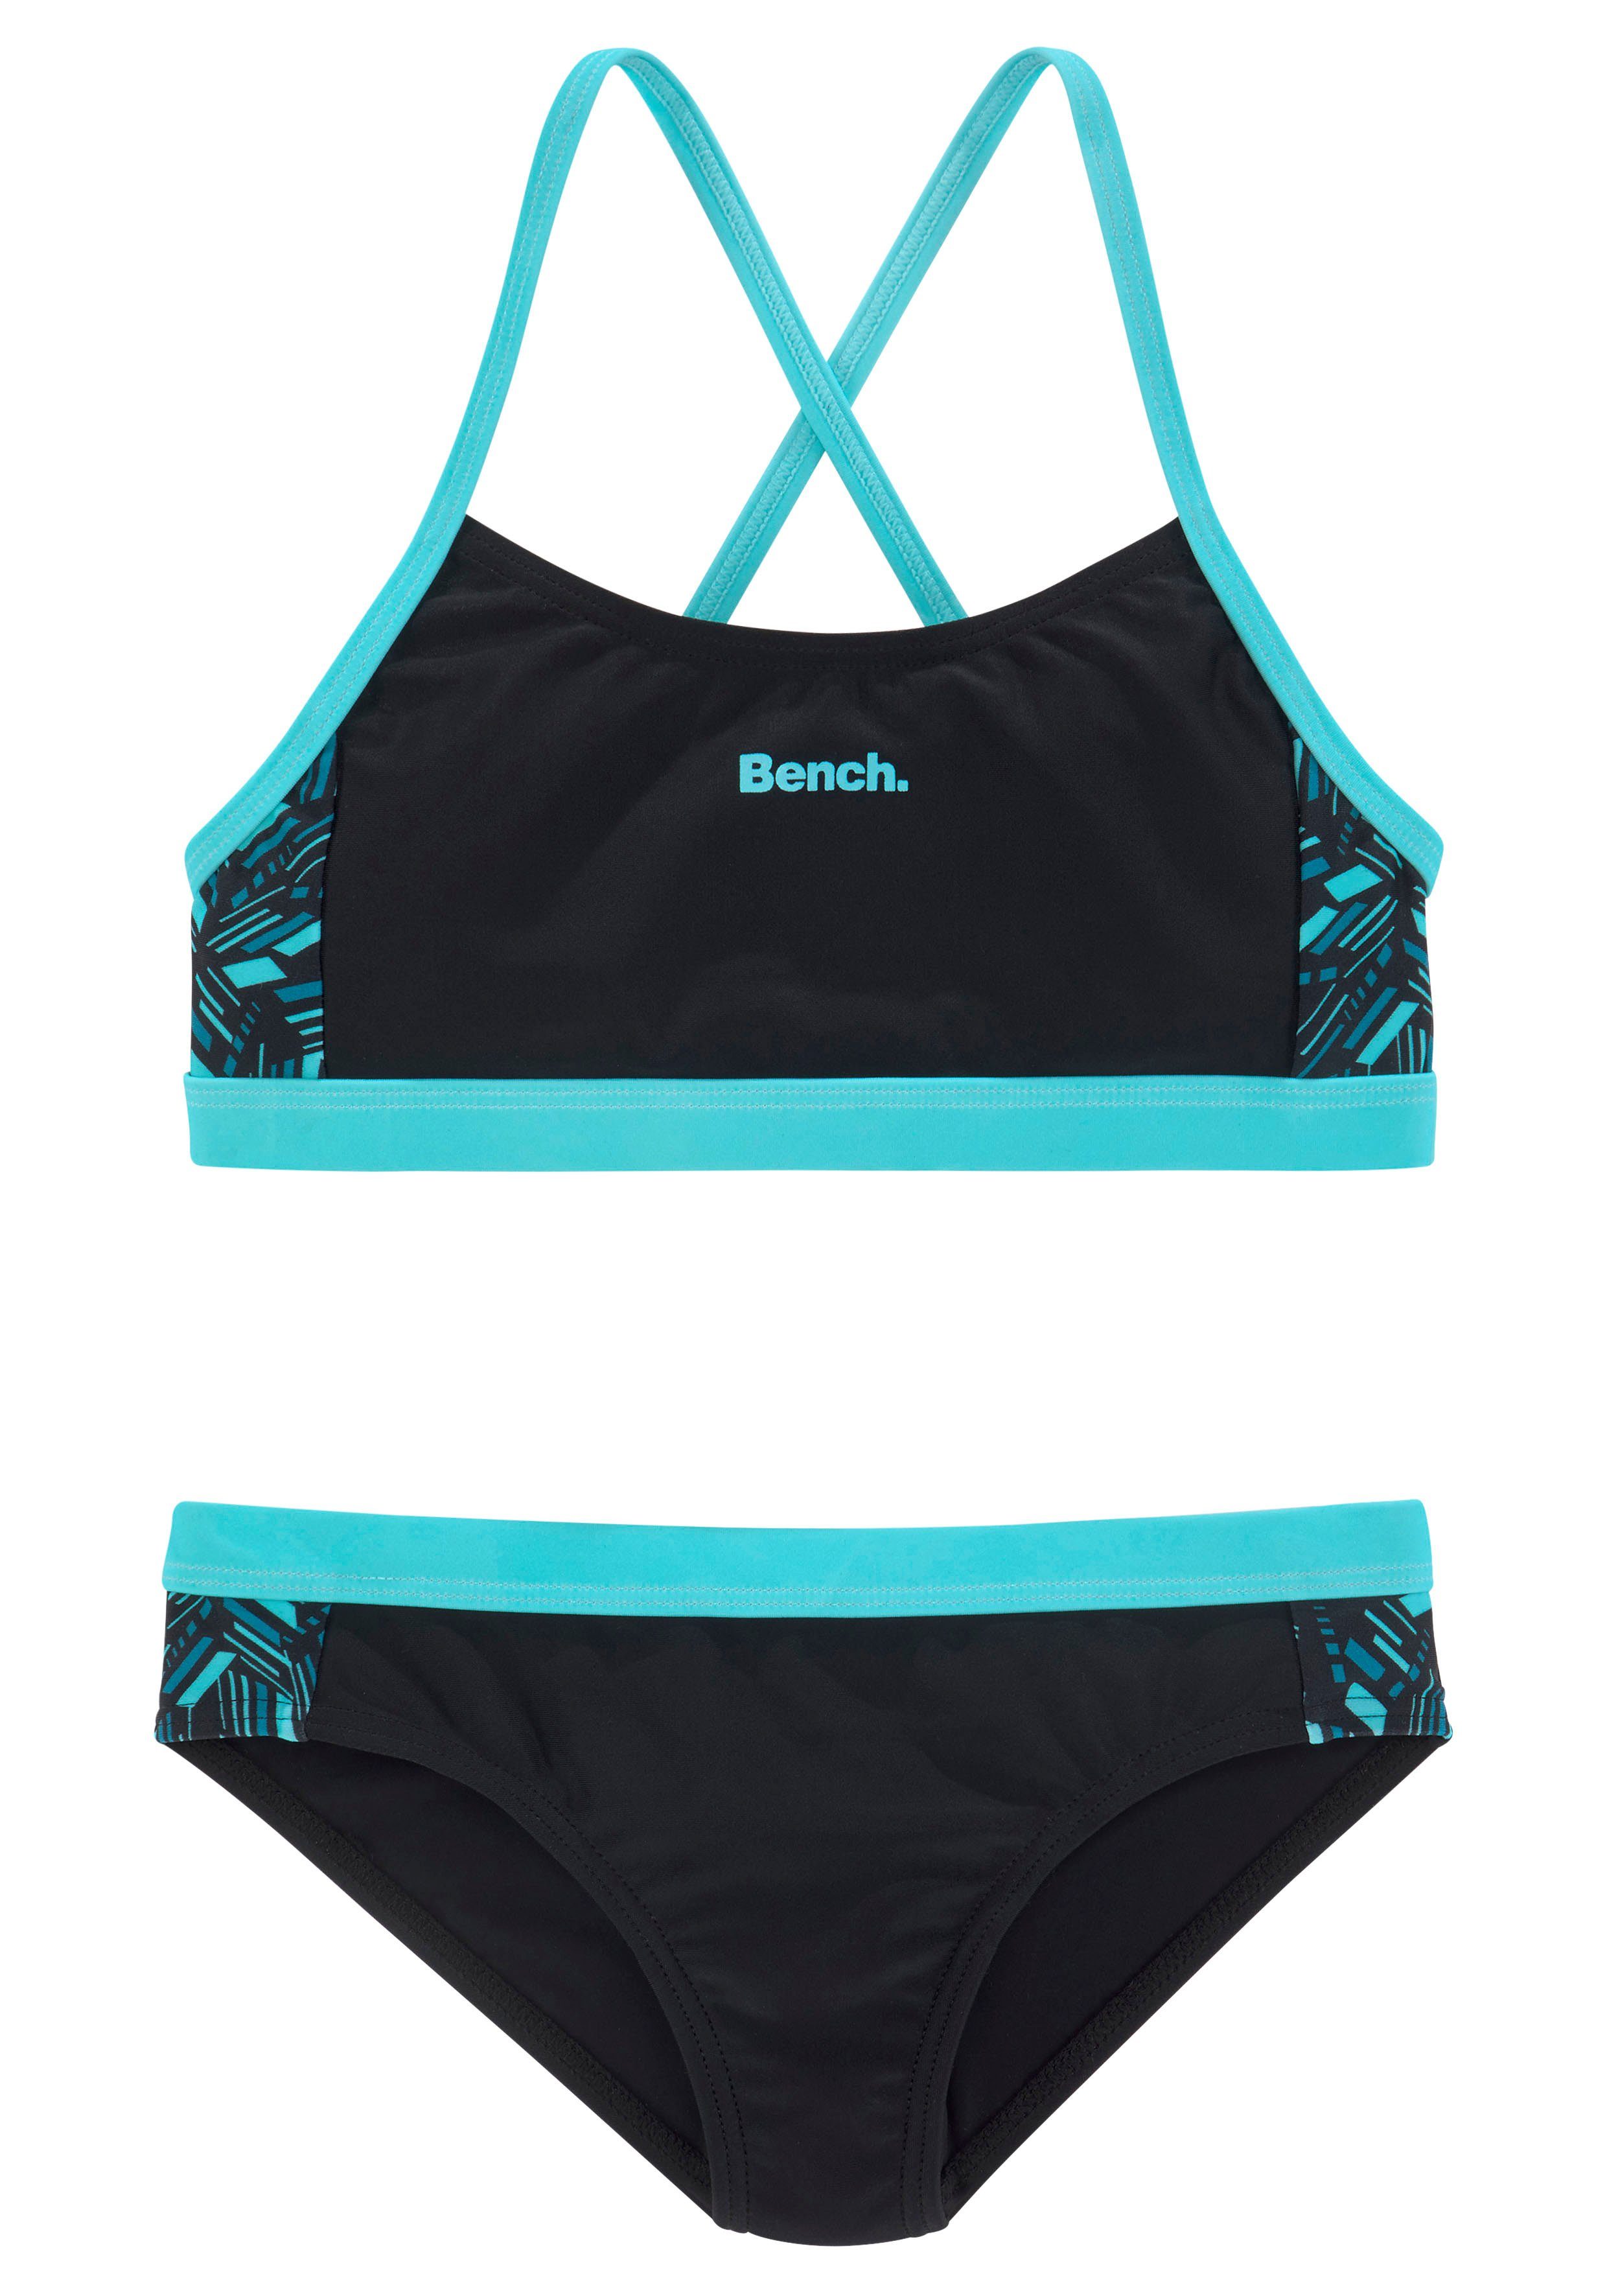 Bench. Bustier-Bikini Einsätzen bedruckten schwarz-blau mit geometrische